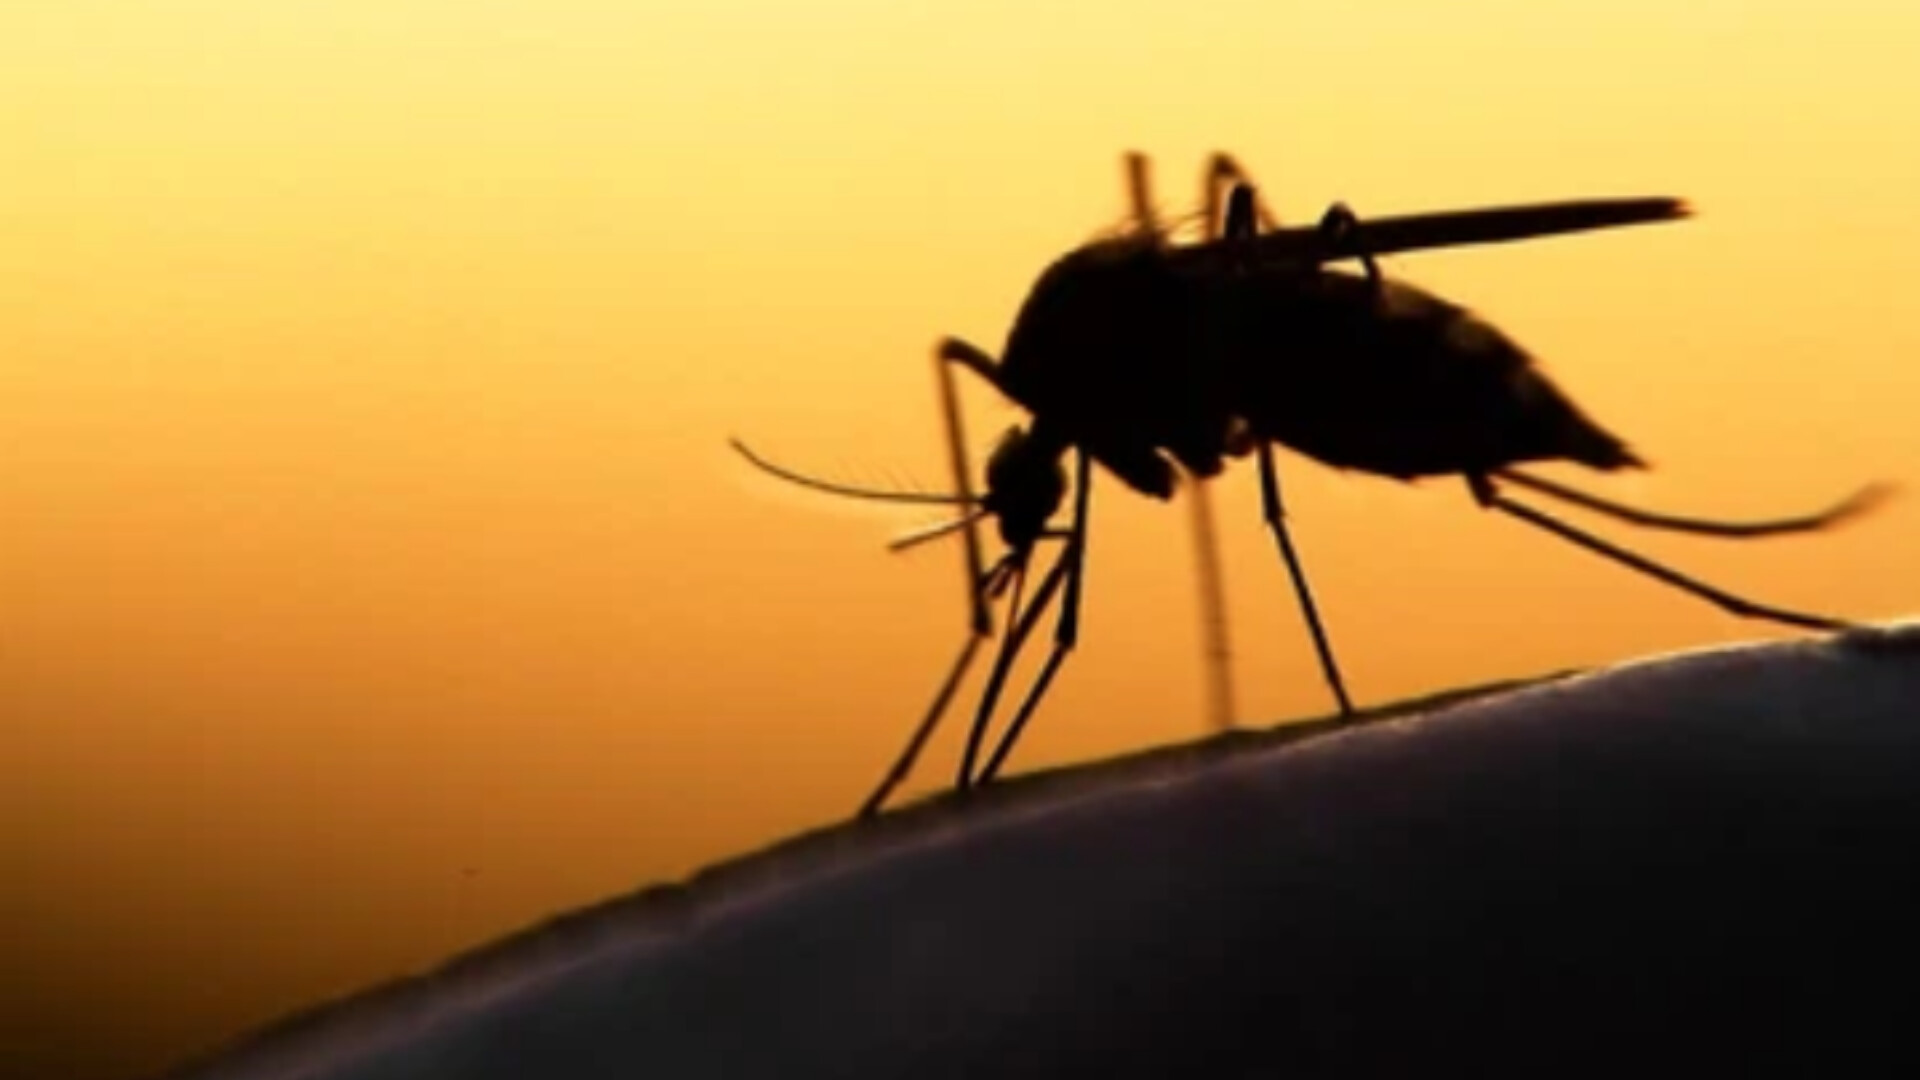 Suid-Afrika mik op die uitswissing van malaria